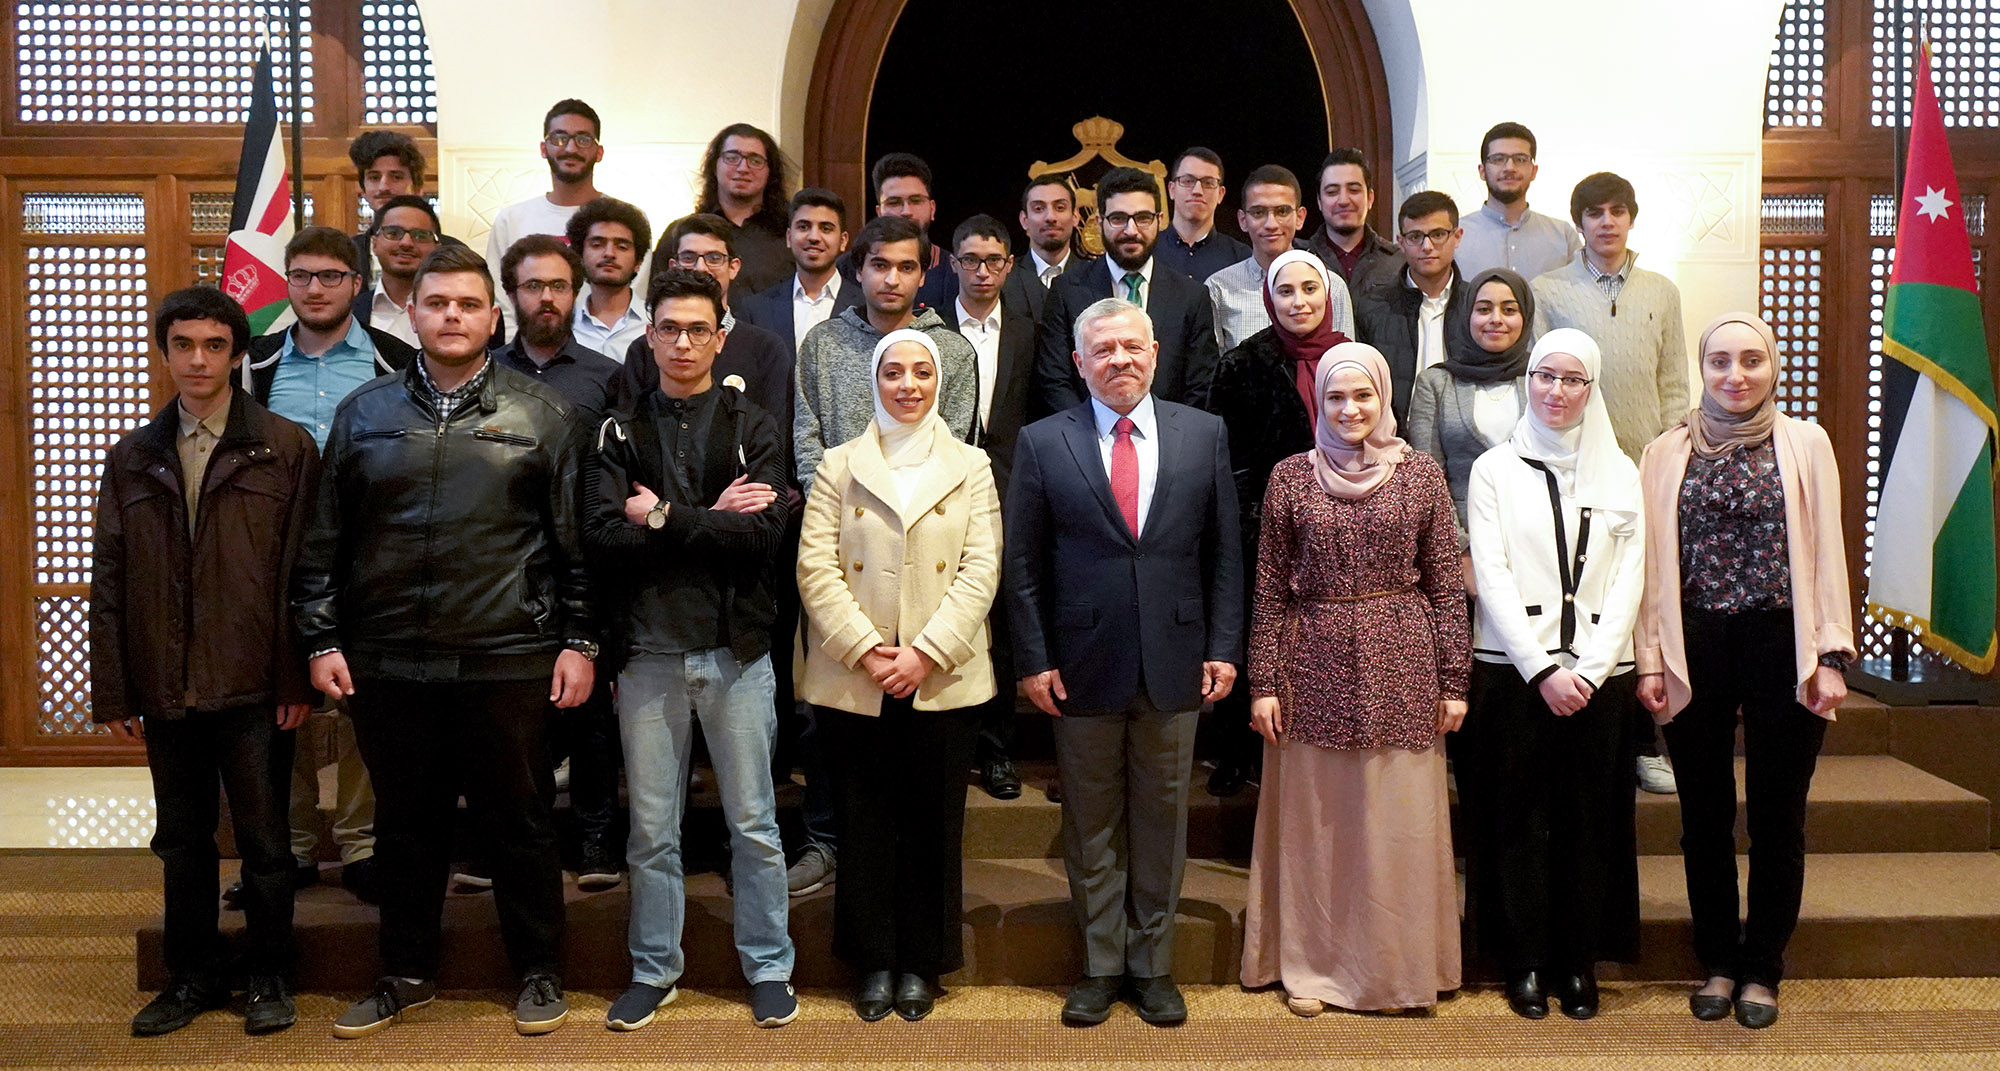 جلالة الملك يلتقي طلبة جامعيين أردنيين حققوا نتائج متقدمة في مسابقتين عالميتين للبرمجة